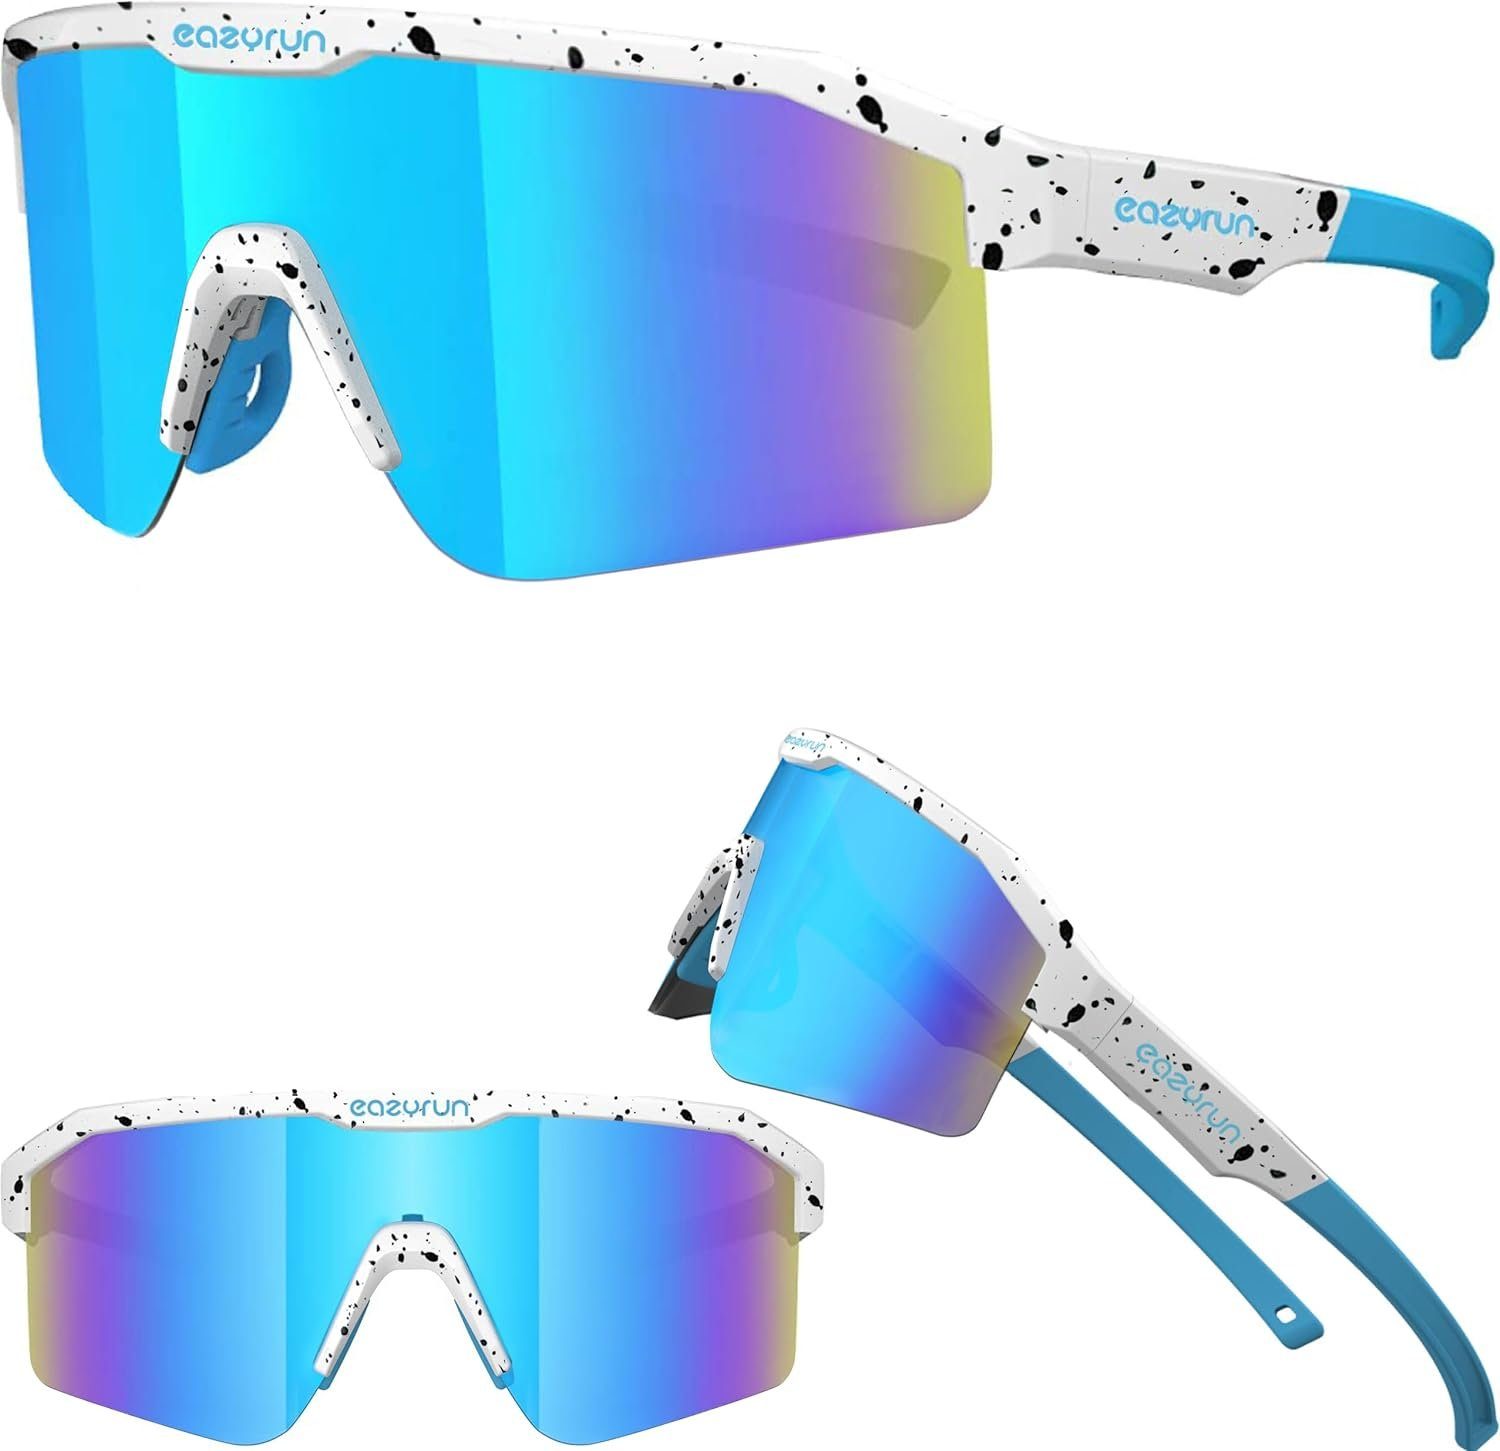 EyeAm Fahrradbrille Sportbrille für Damen & Herren für Sport, Laufen, MTB & Outdoor, (Modell: EAZYRUN), UV-Schutz 400 F25F